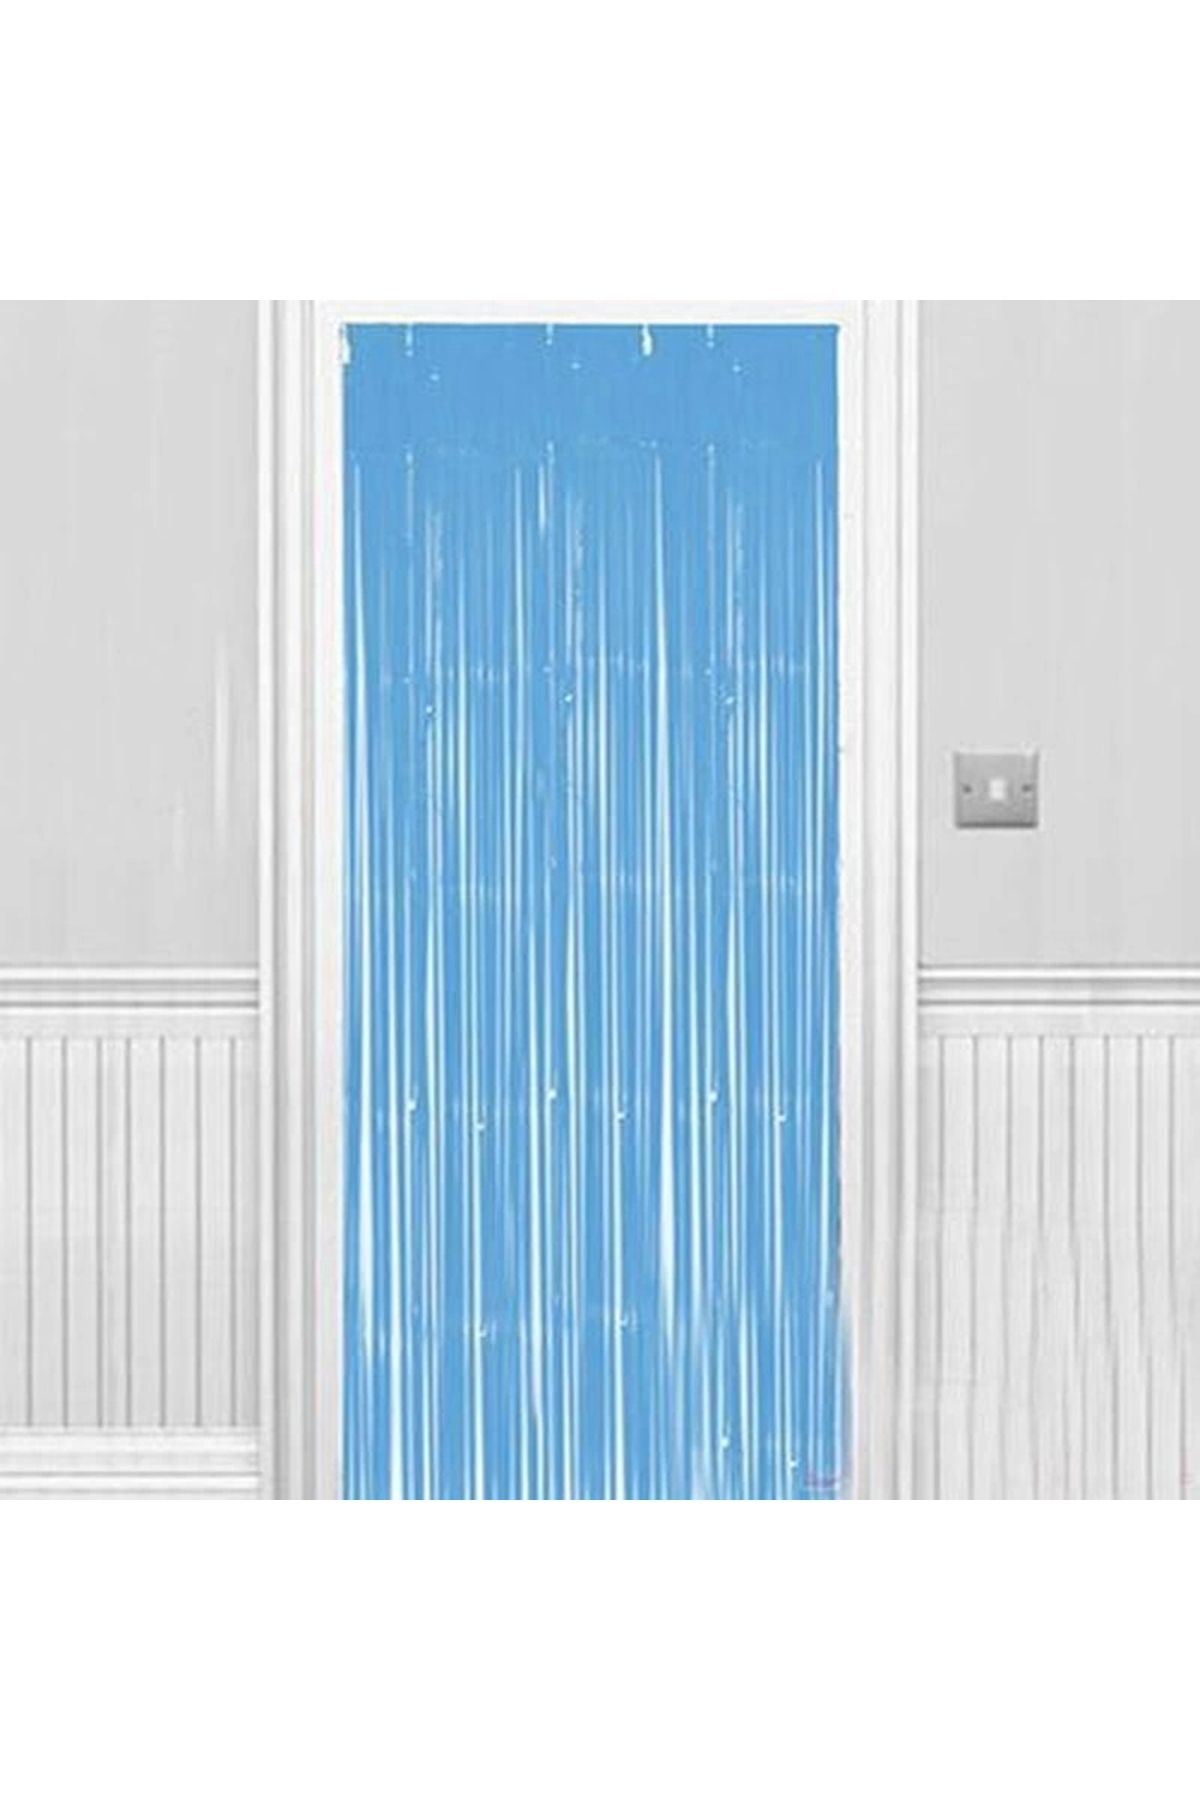 ADEKD Soft Açık Mavi Renk Duvar ve Kapı Perdesi 100x220 cm